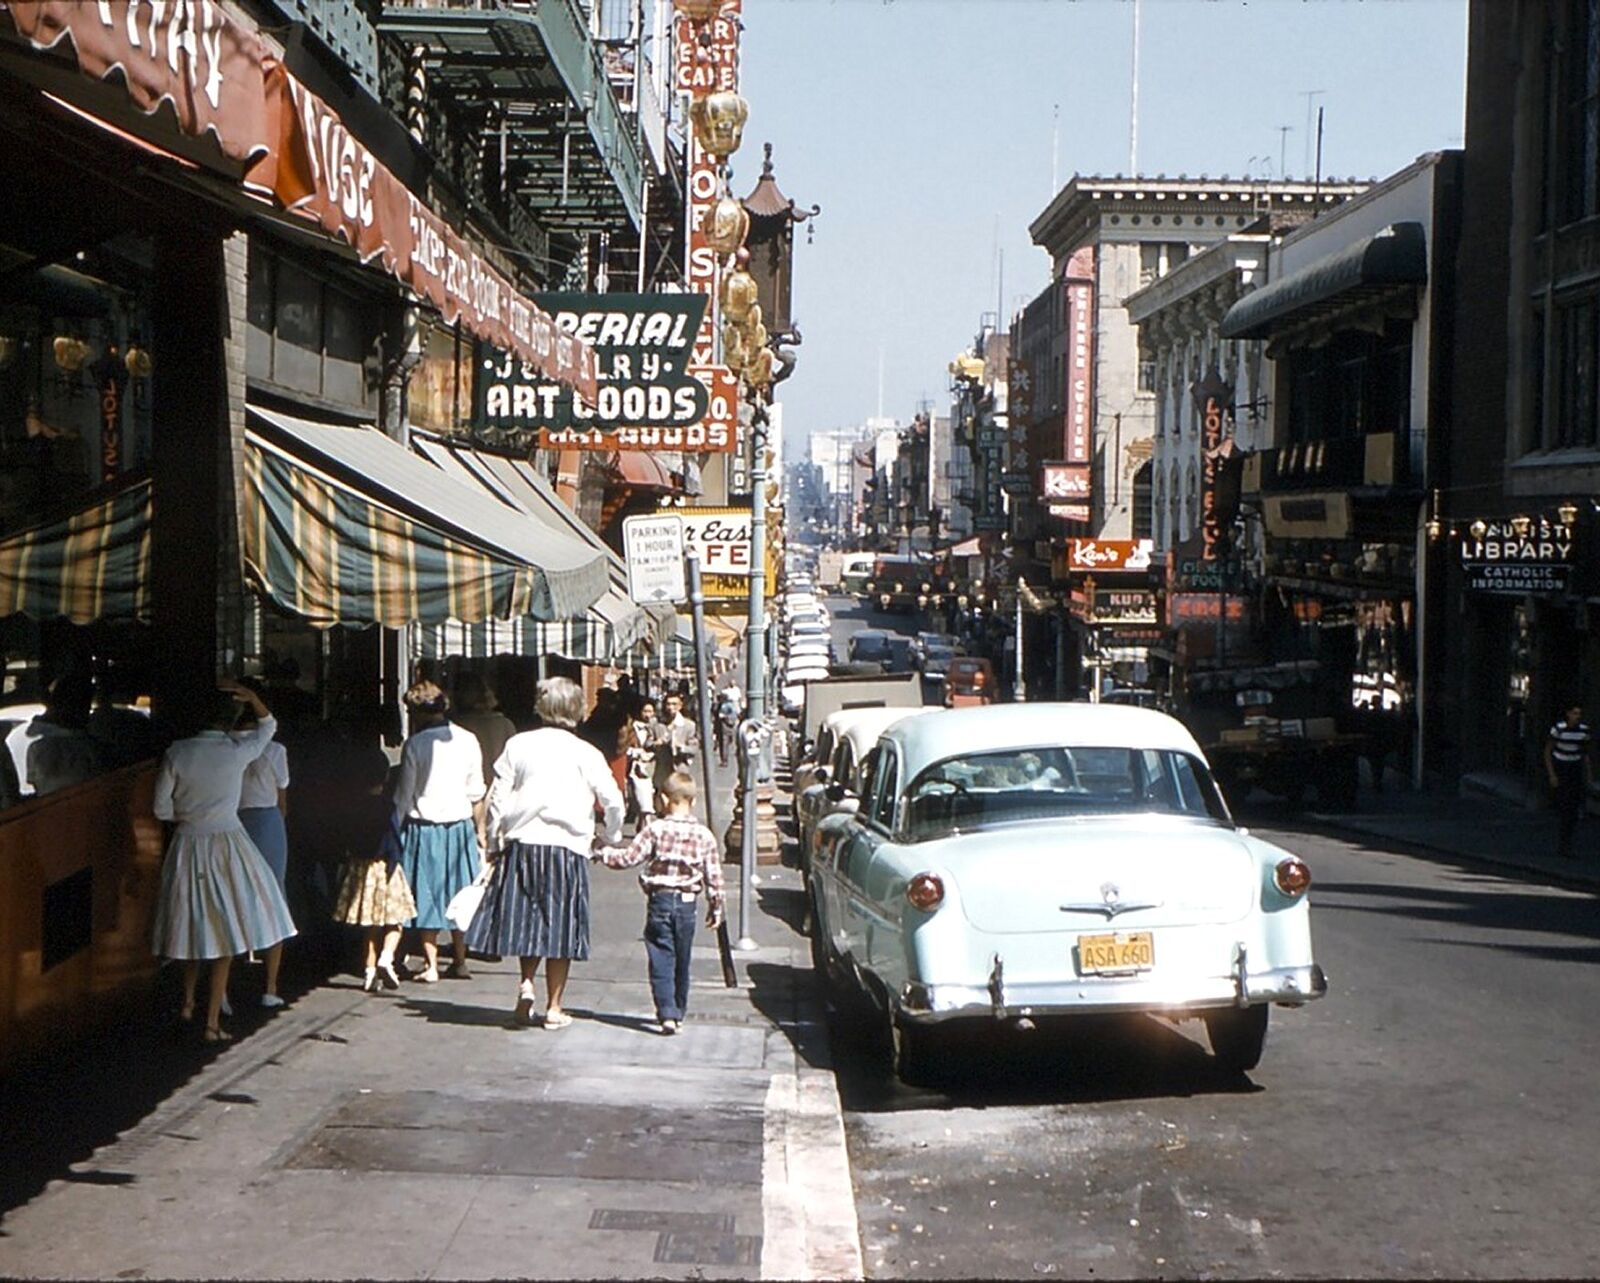 1950s SAN FRANCISCO STREET SCENE PHOTO Vintage Cars (182-k)